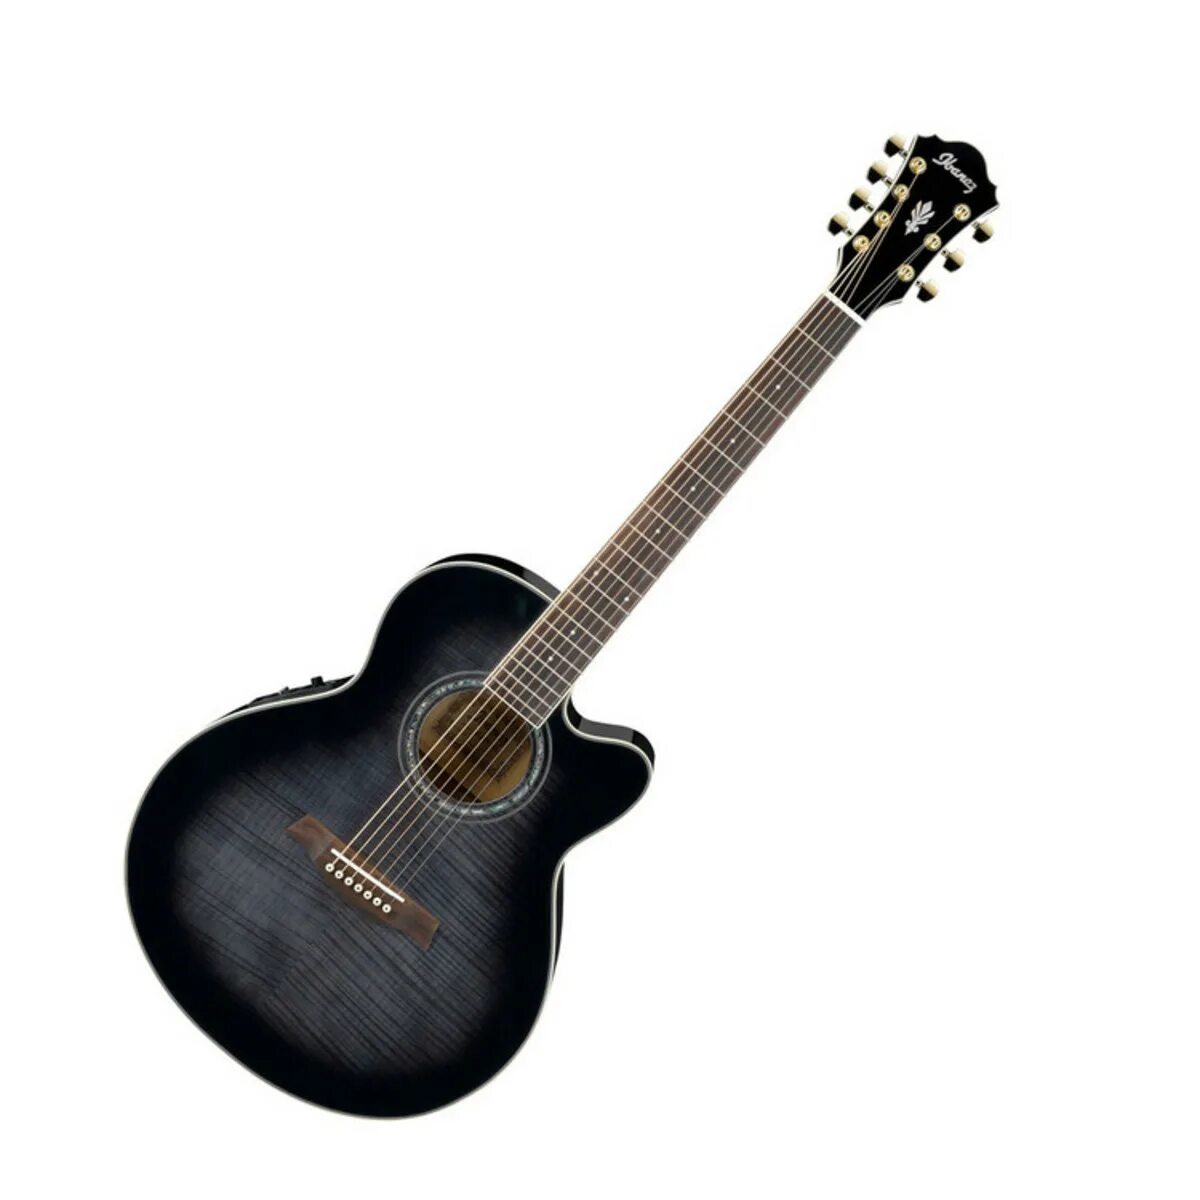 7 струнная гитара купить. Ibanez 7 String. Акустическая гитара prima dsag215. Акустическая гитара Джонсон е4111. Ibanez Acoustic Guitar.